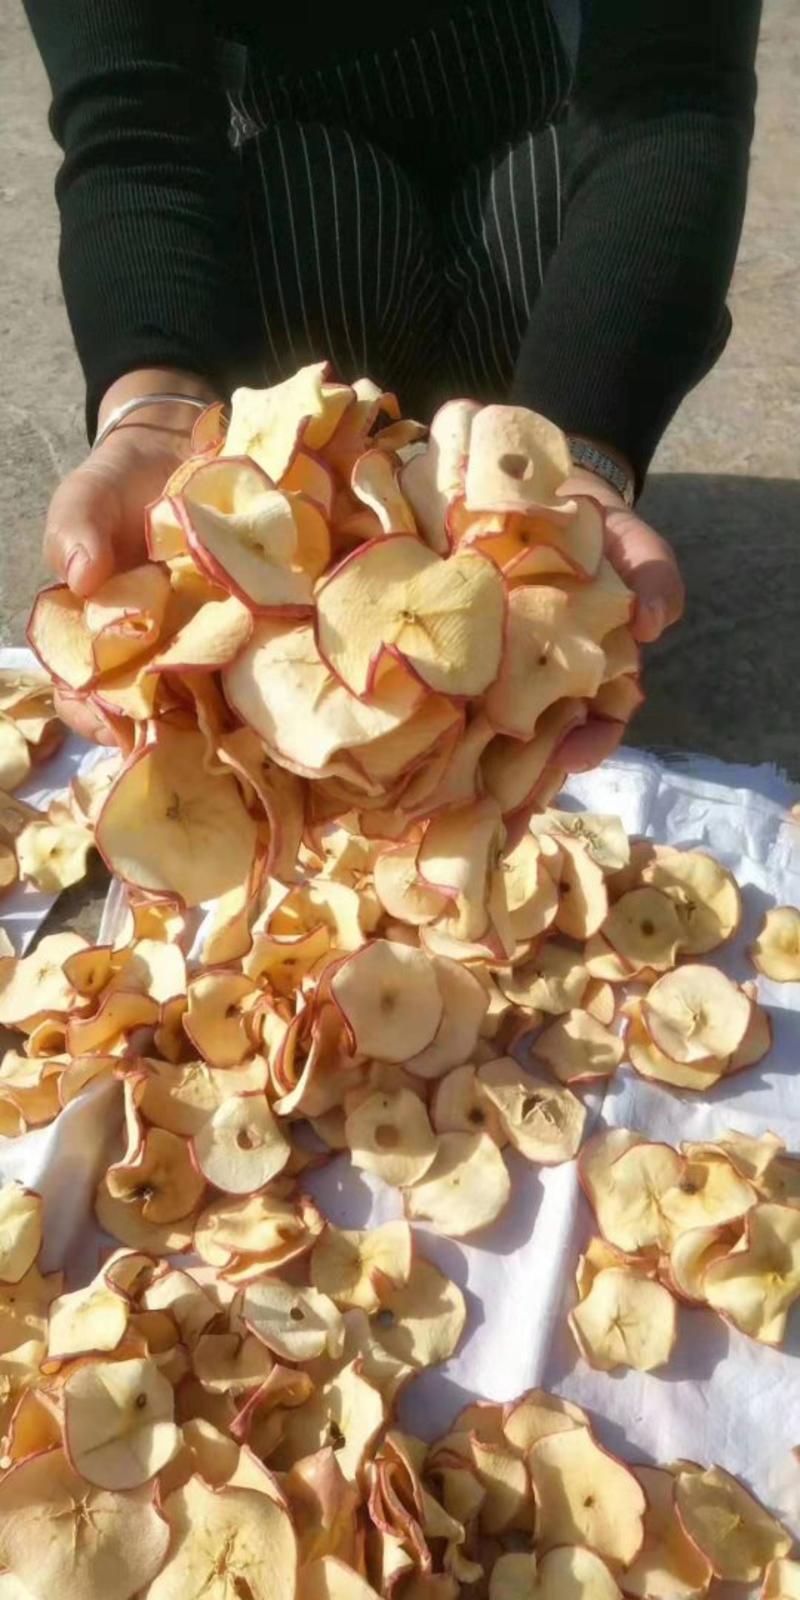 吉县百吨苹果干农家自晒大量批发